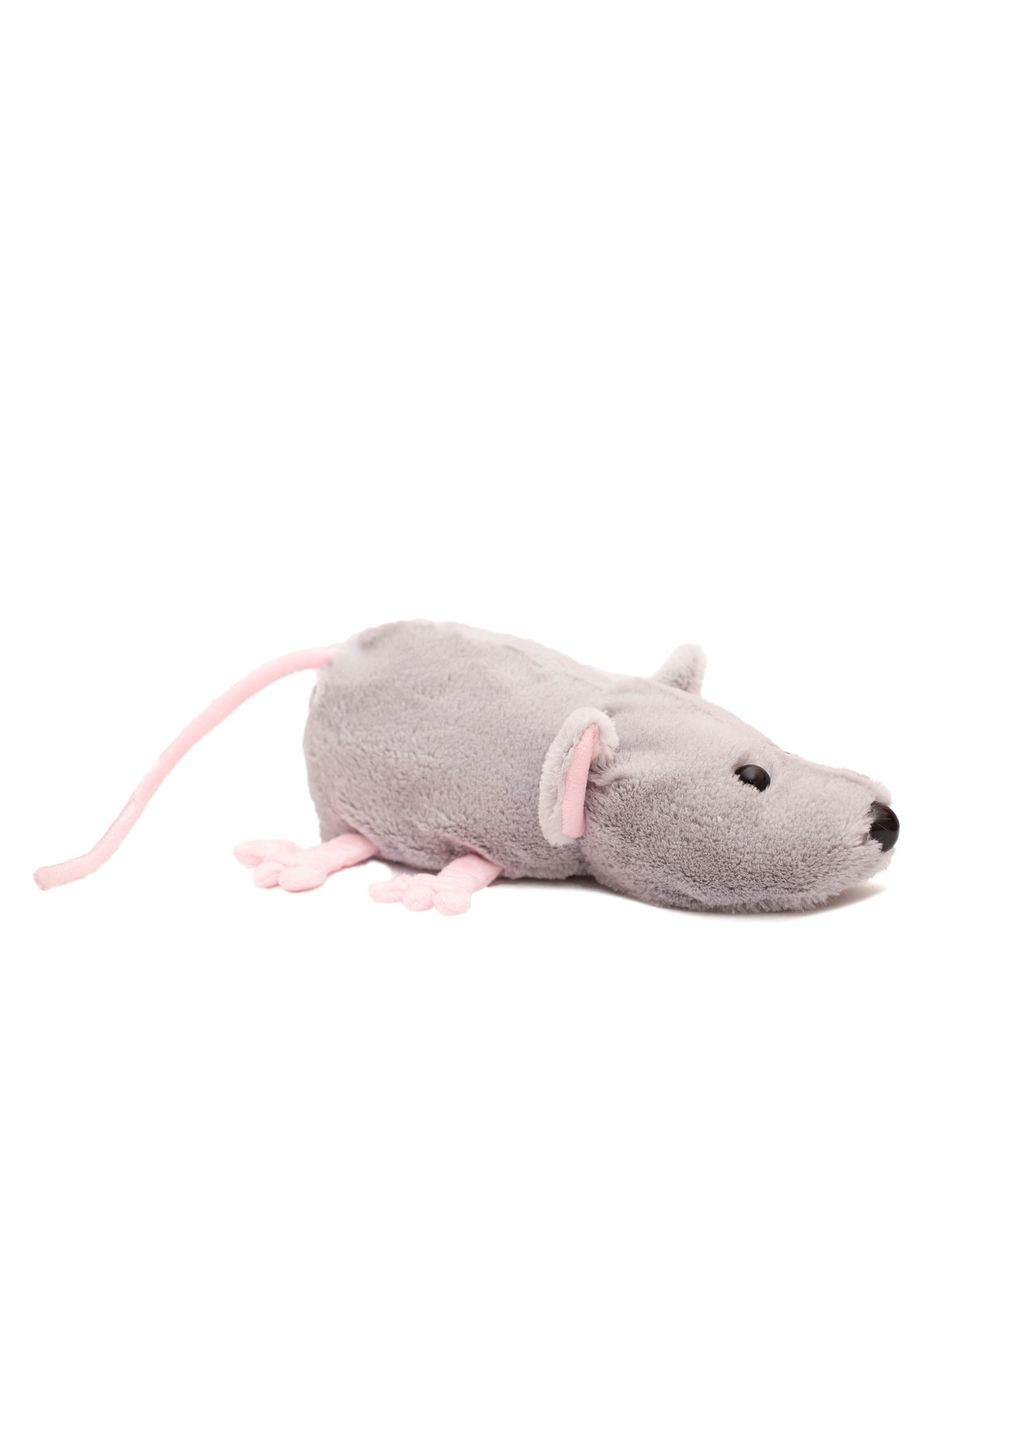 Мягкая игрушка Крыса серая 28 см Алина (280915595)